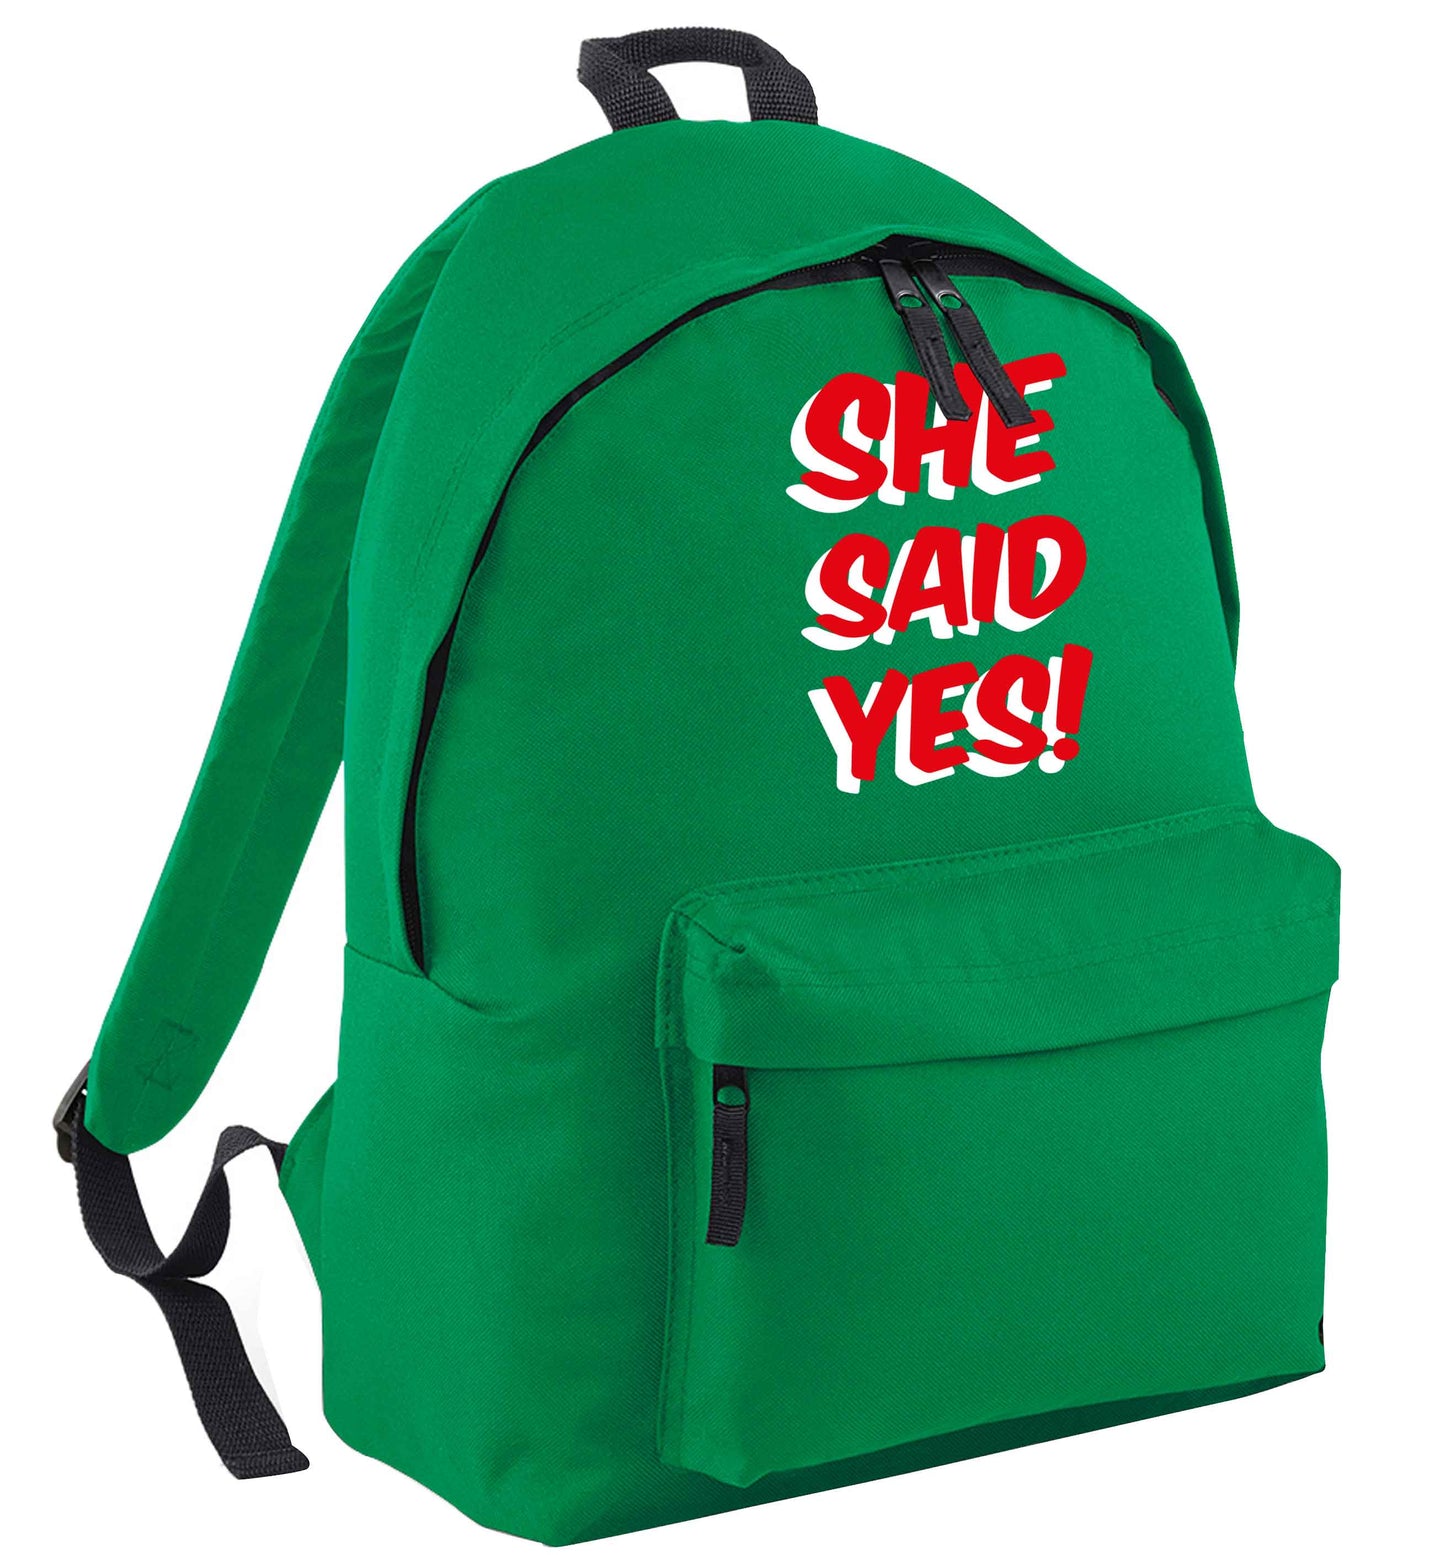 She said yes green adults backpack